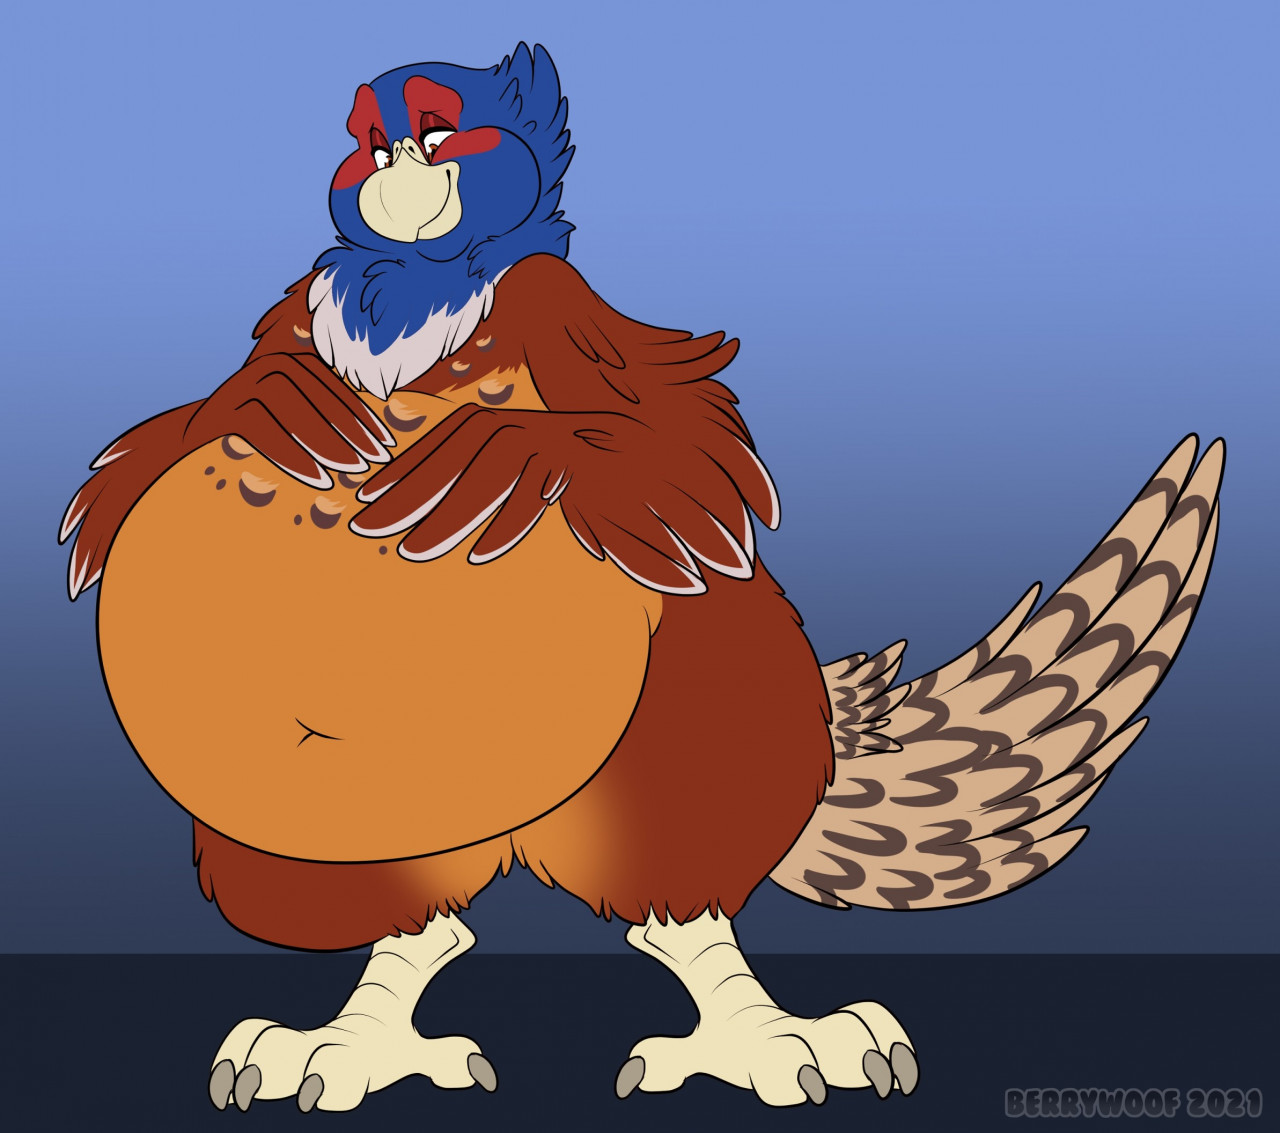 morbidly obese bird